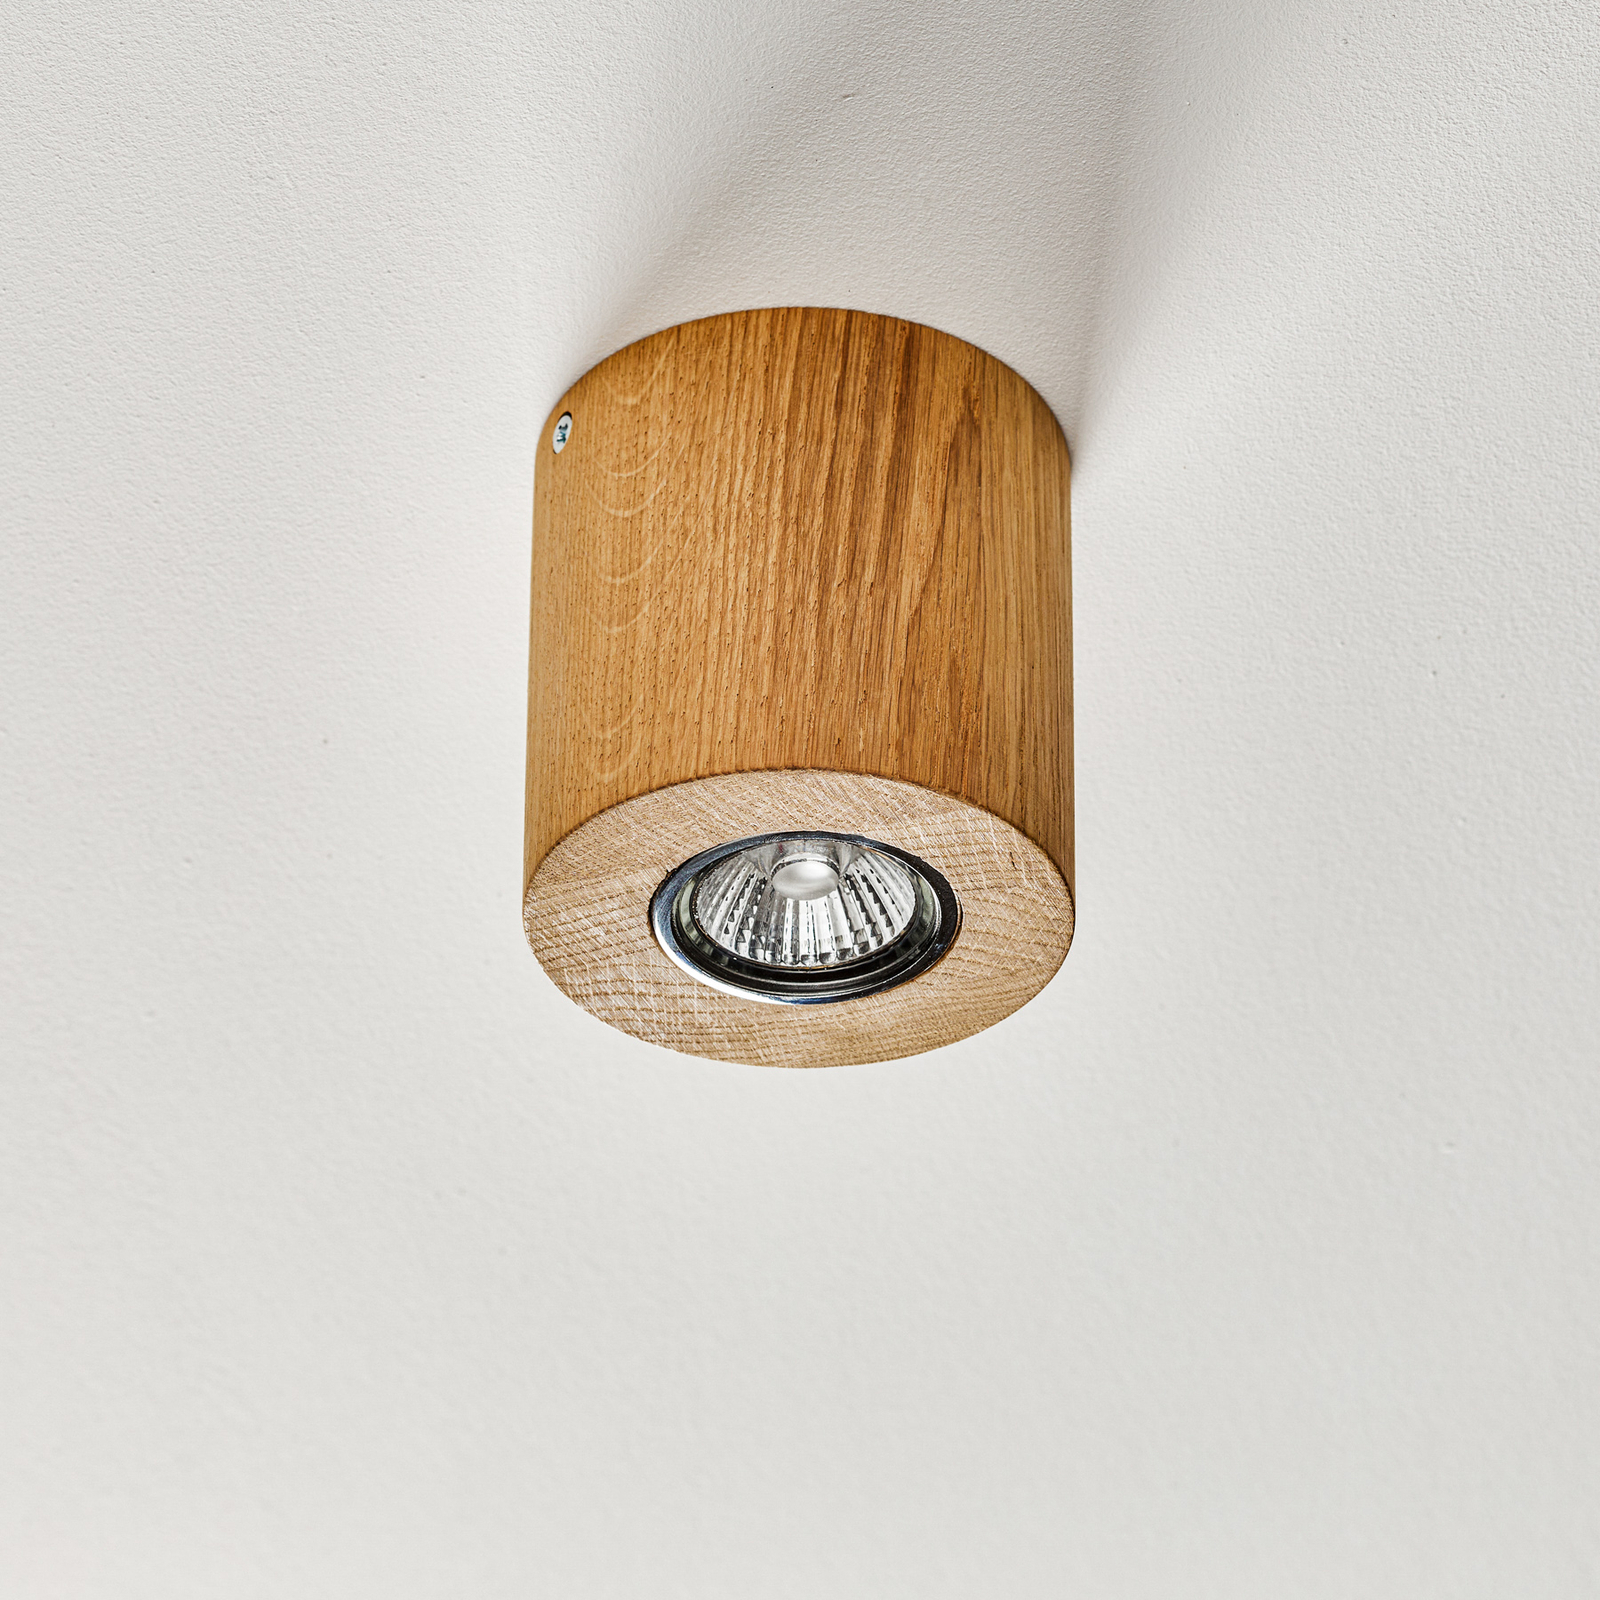 Lampa sufitowa Wooddream 1-pkt. dąb, okrągła, 10cm